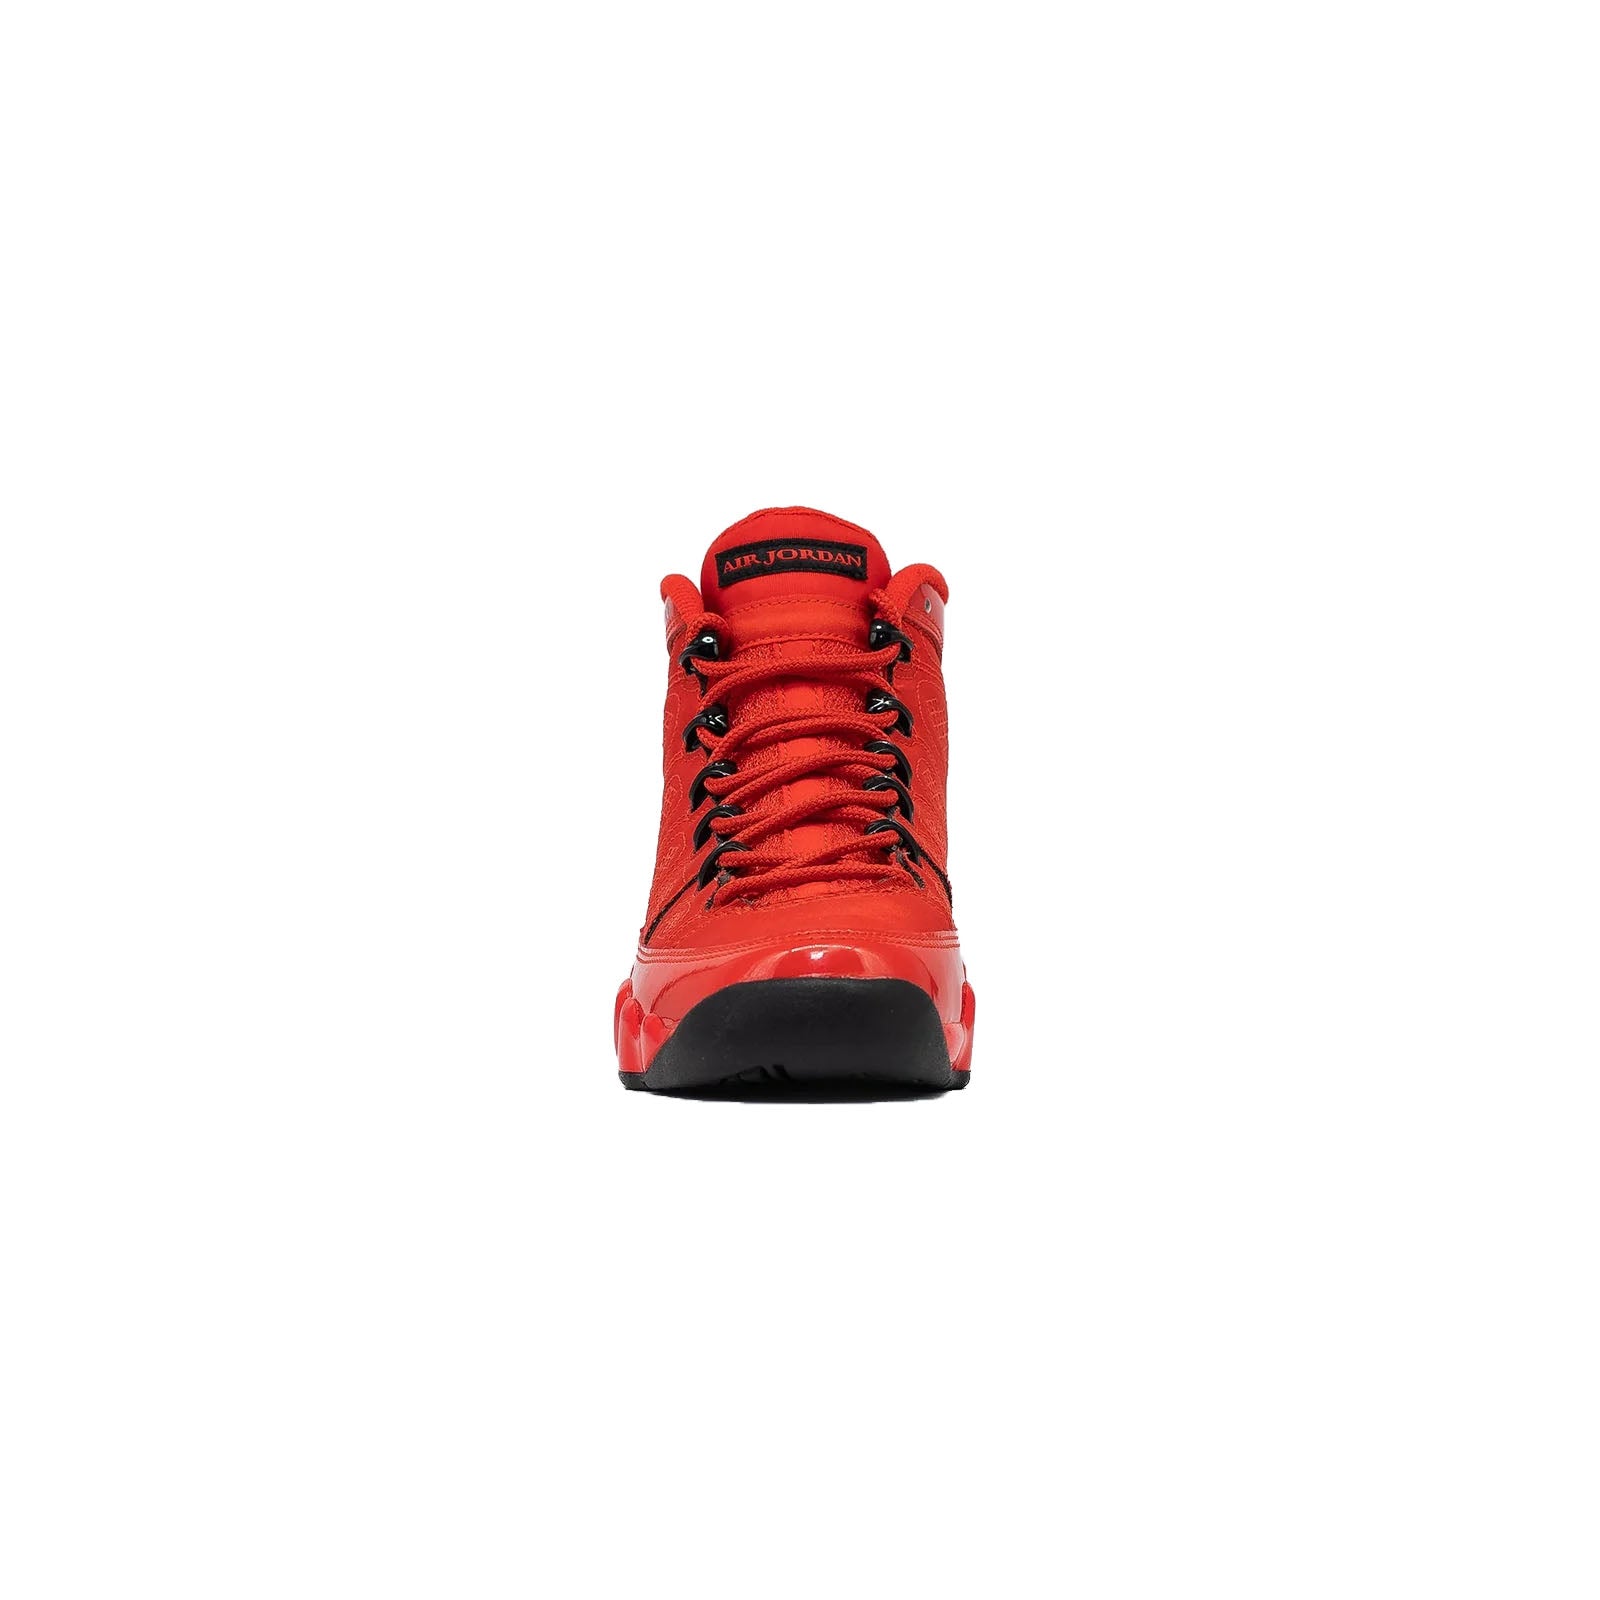 Air Jordan 9 (GS), Chile Red